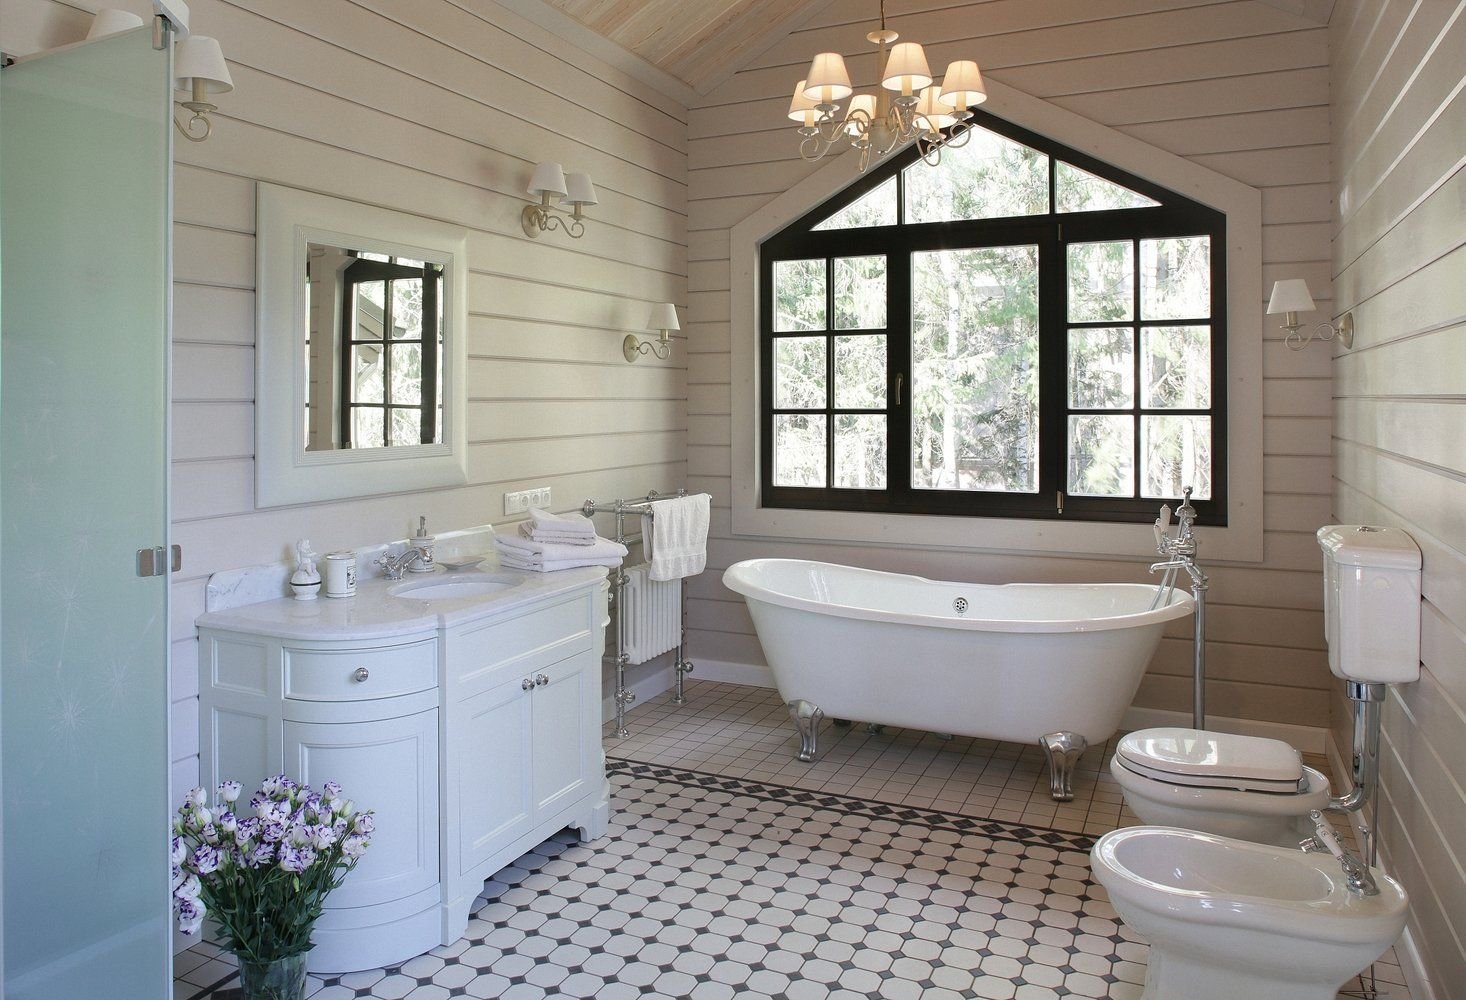 Интерьер ванной комнаты в деревянном доме из сруба.